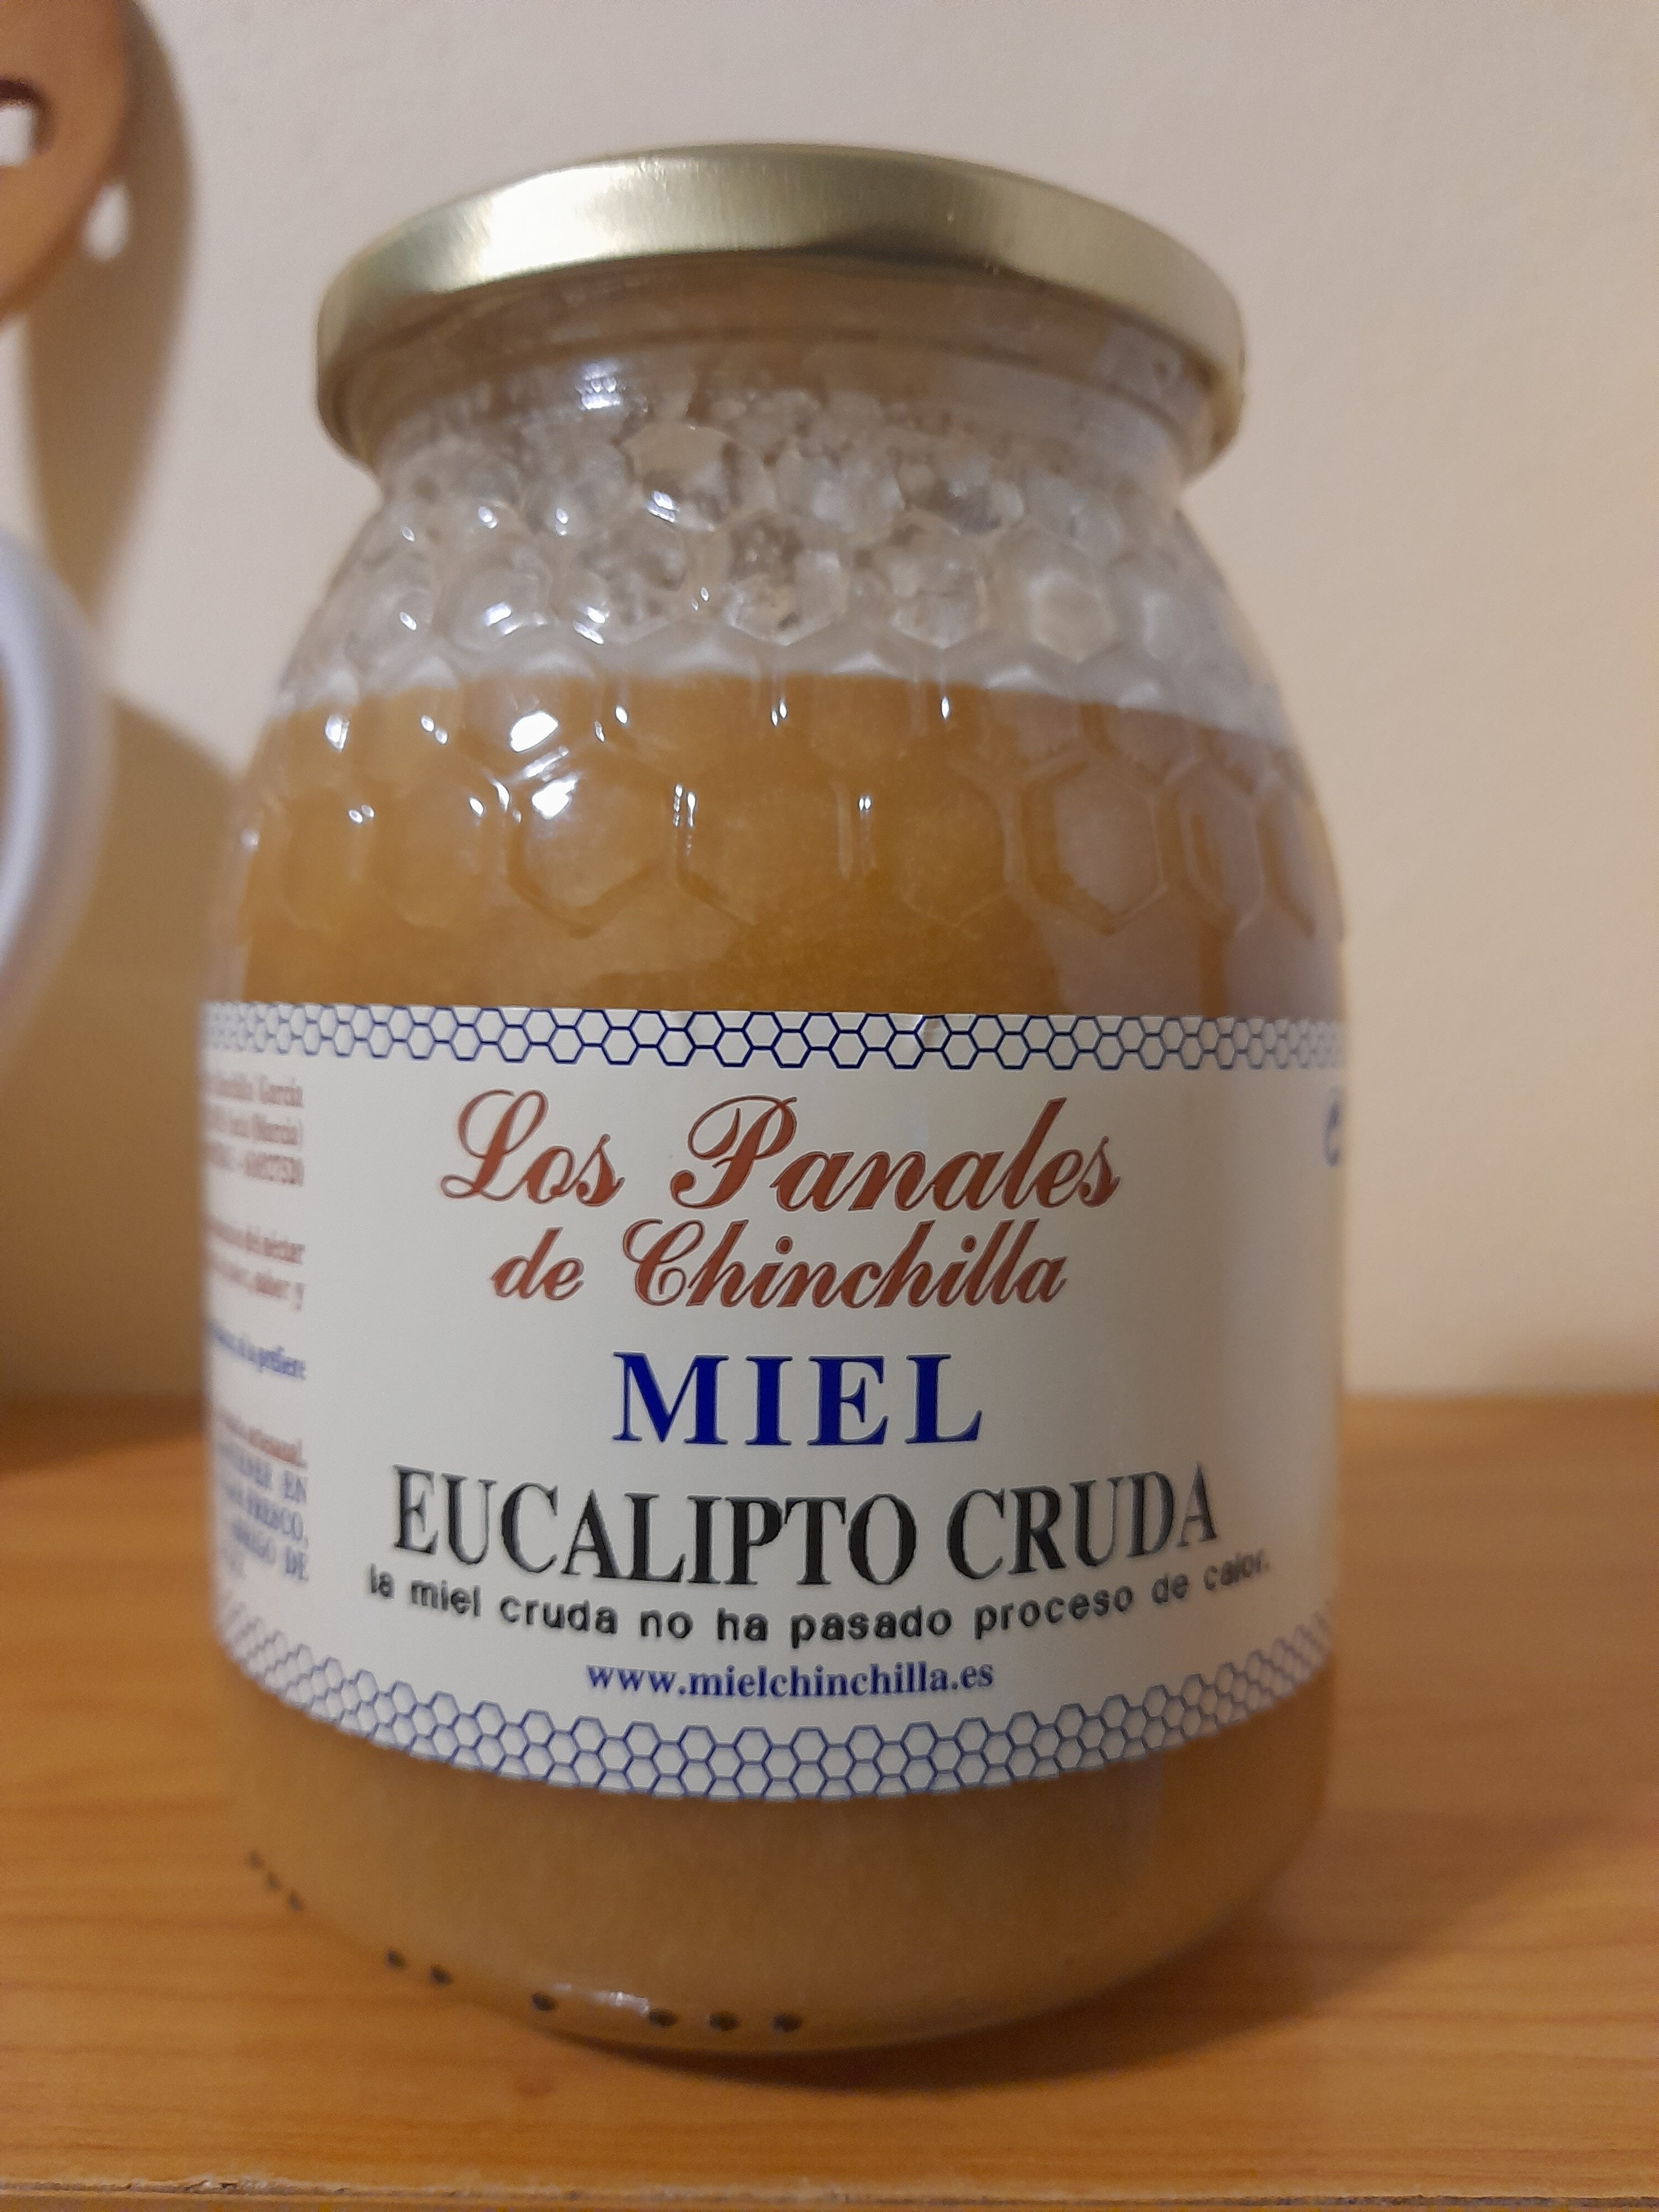 Miel de eucalipto cruda - Product - es